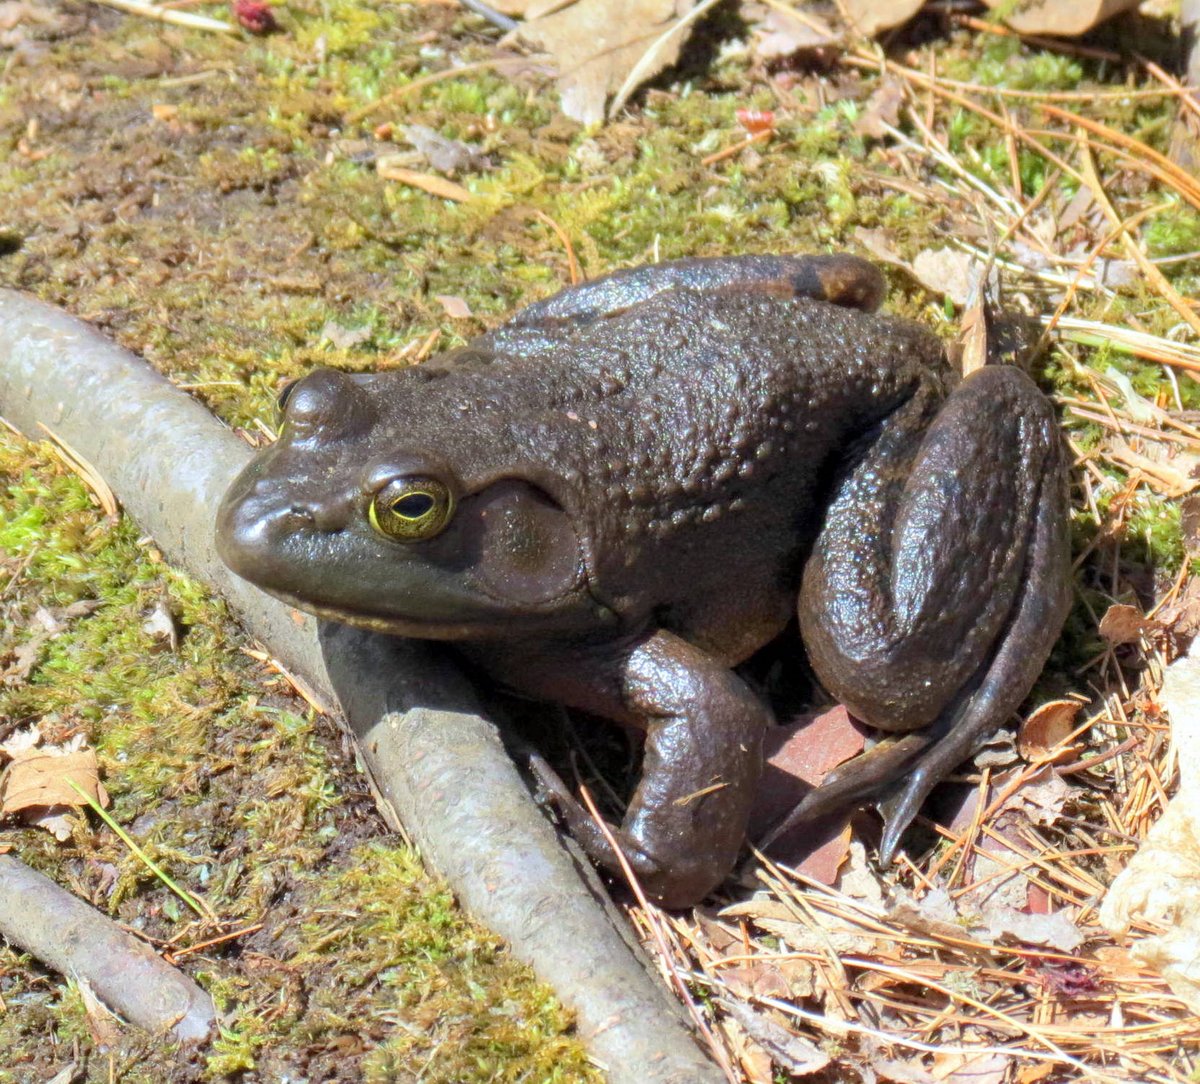 12. Bullfrog